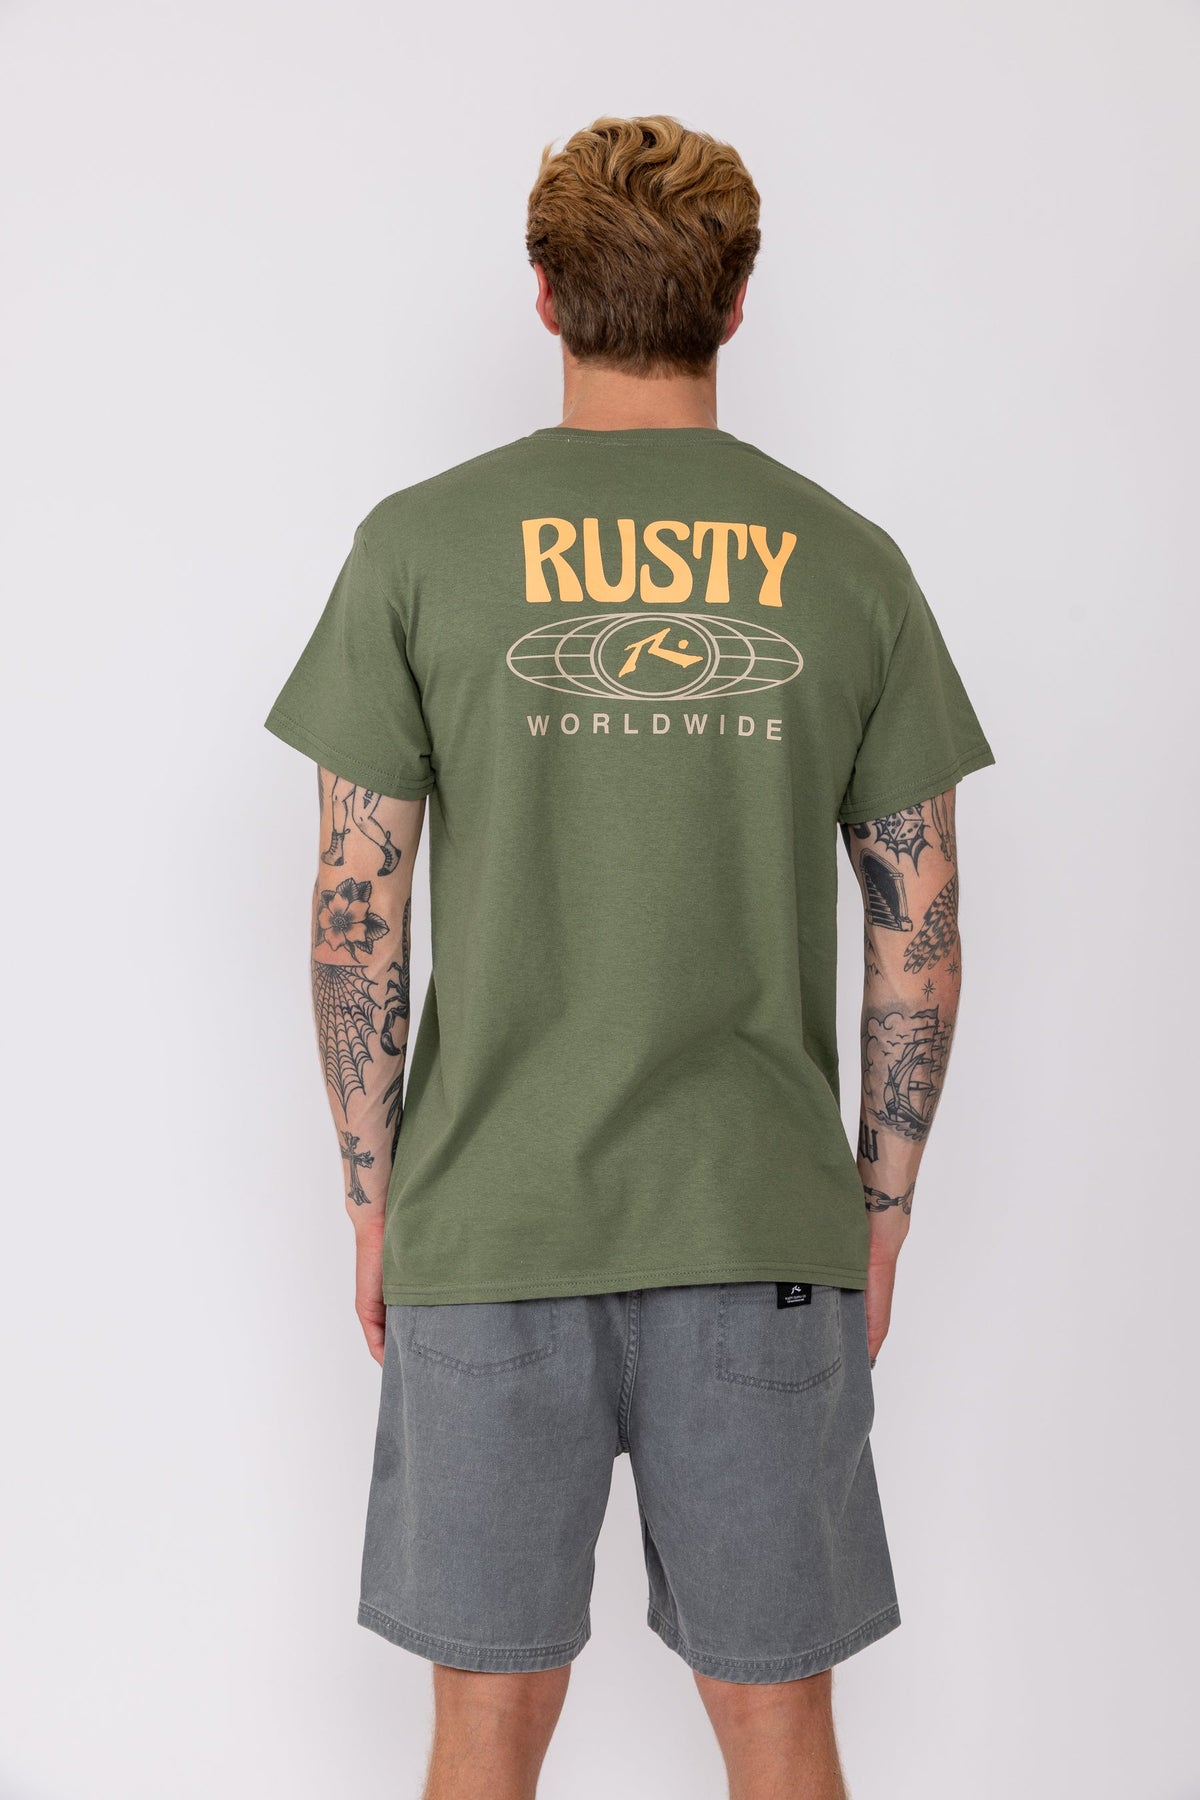 Rusty USA Surf Worldwide Ss Tee OLIVE